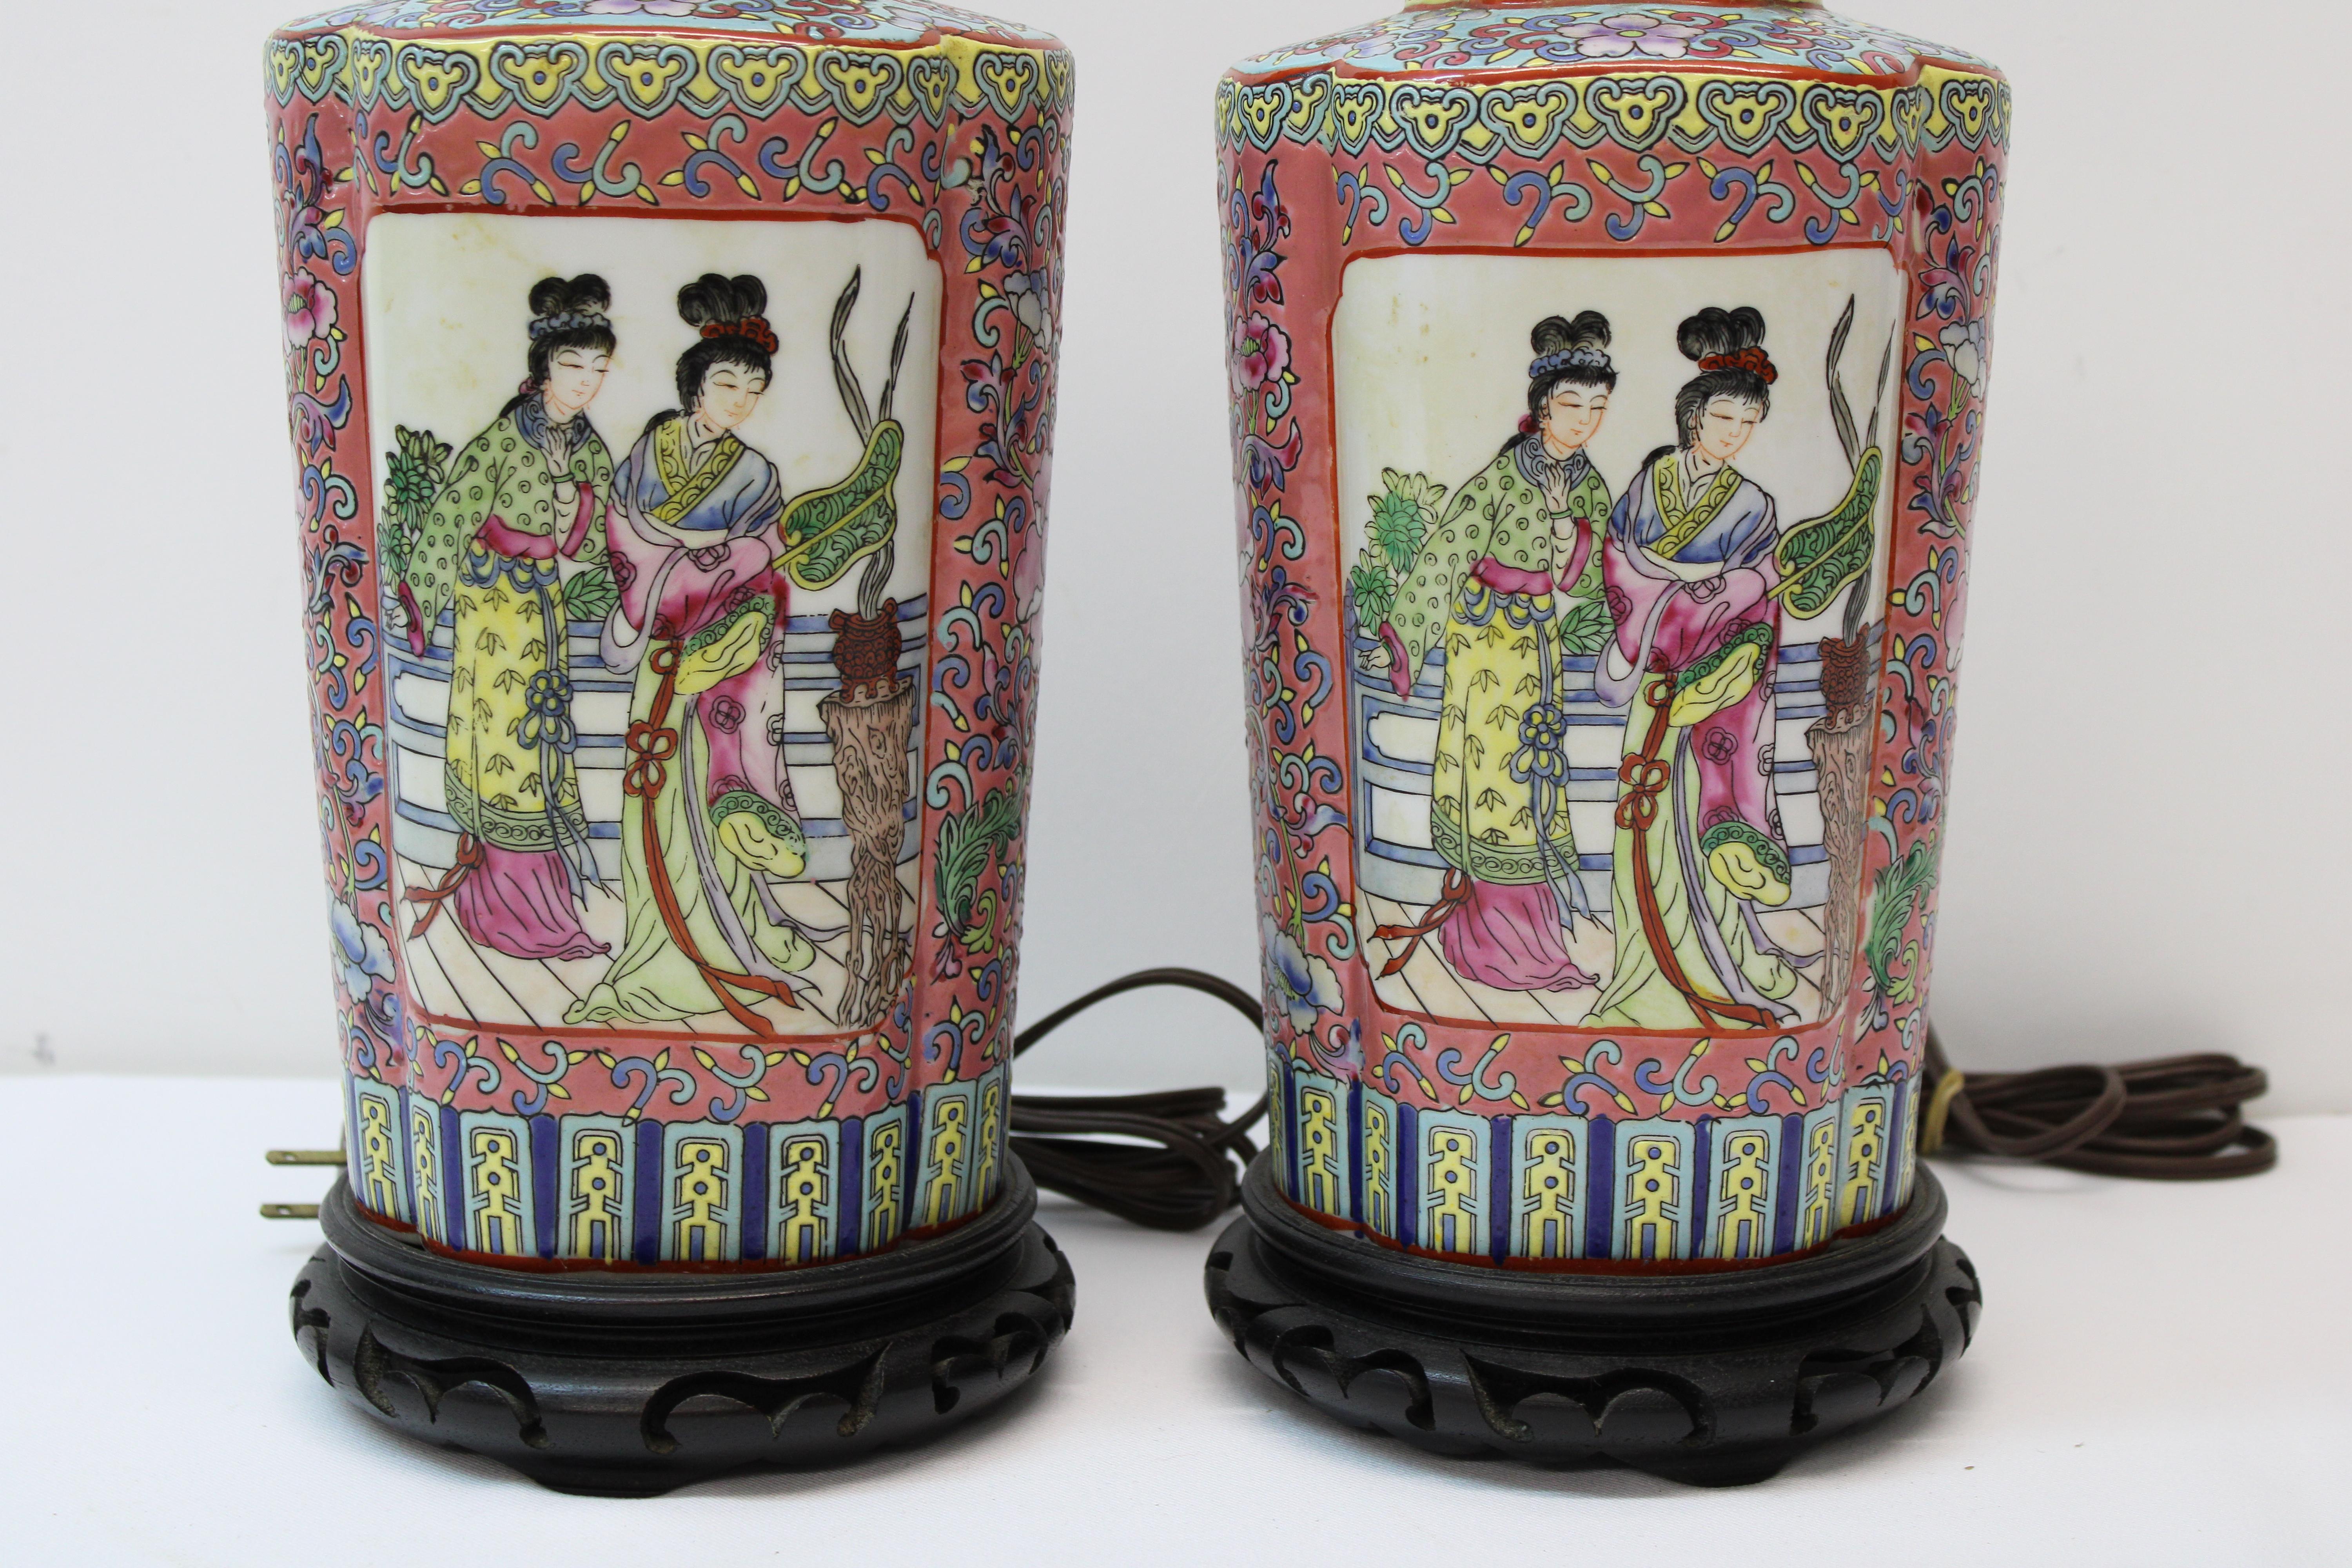 C. 20th century - Pair of 1940's Asian motif unglazed ceramic lamps.